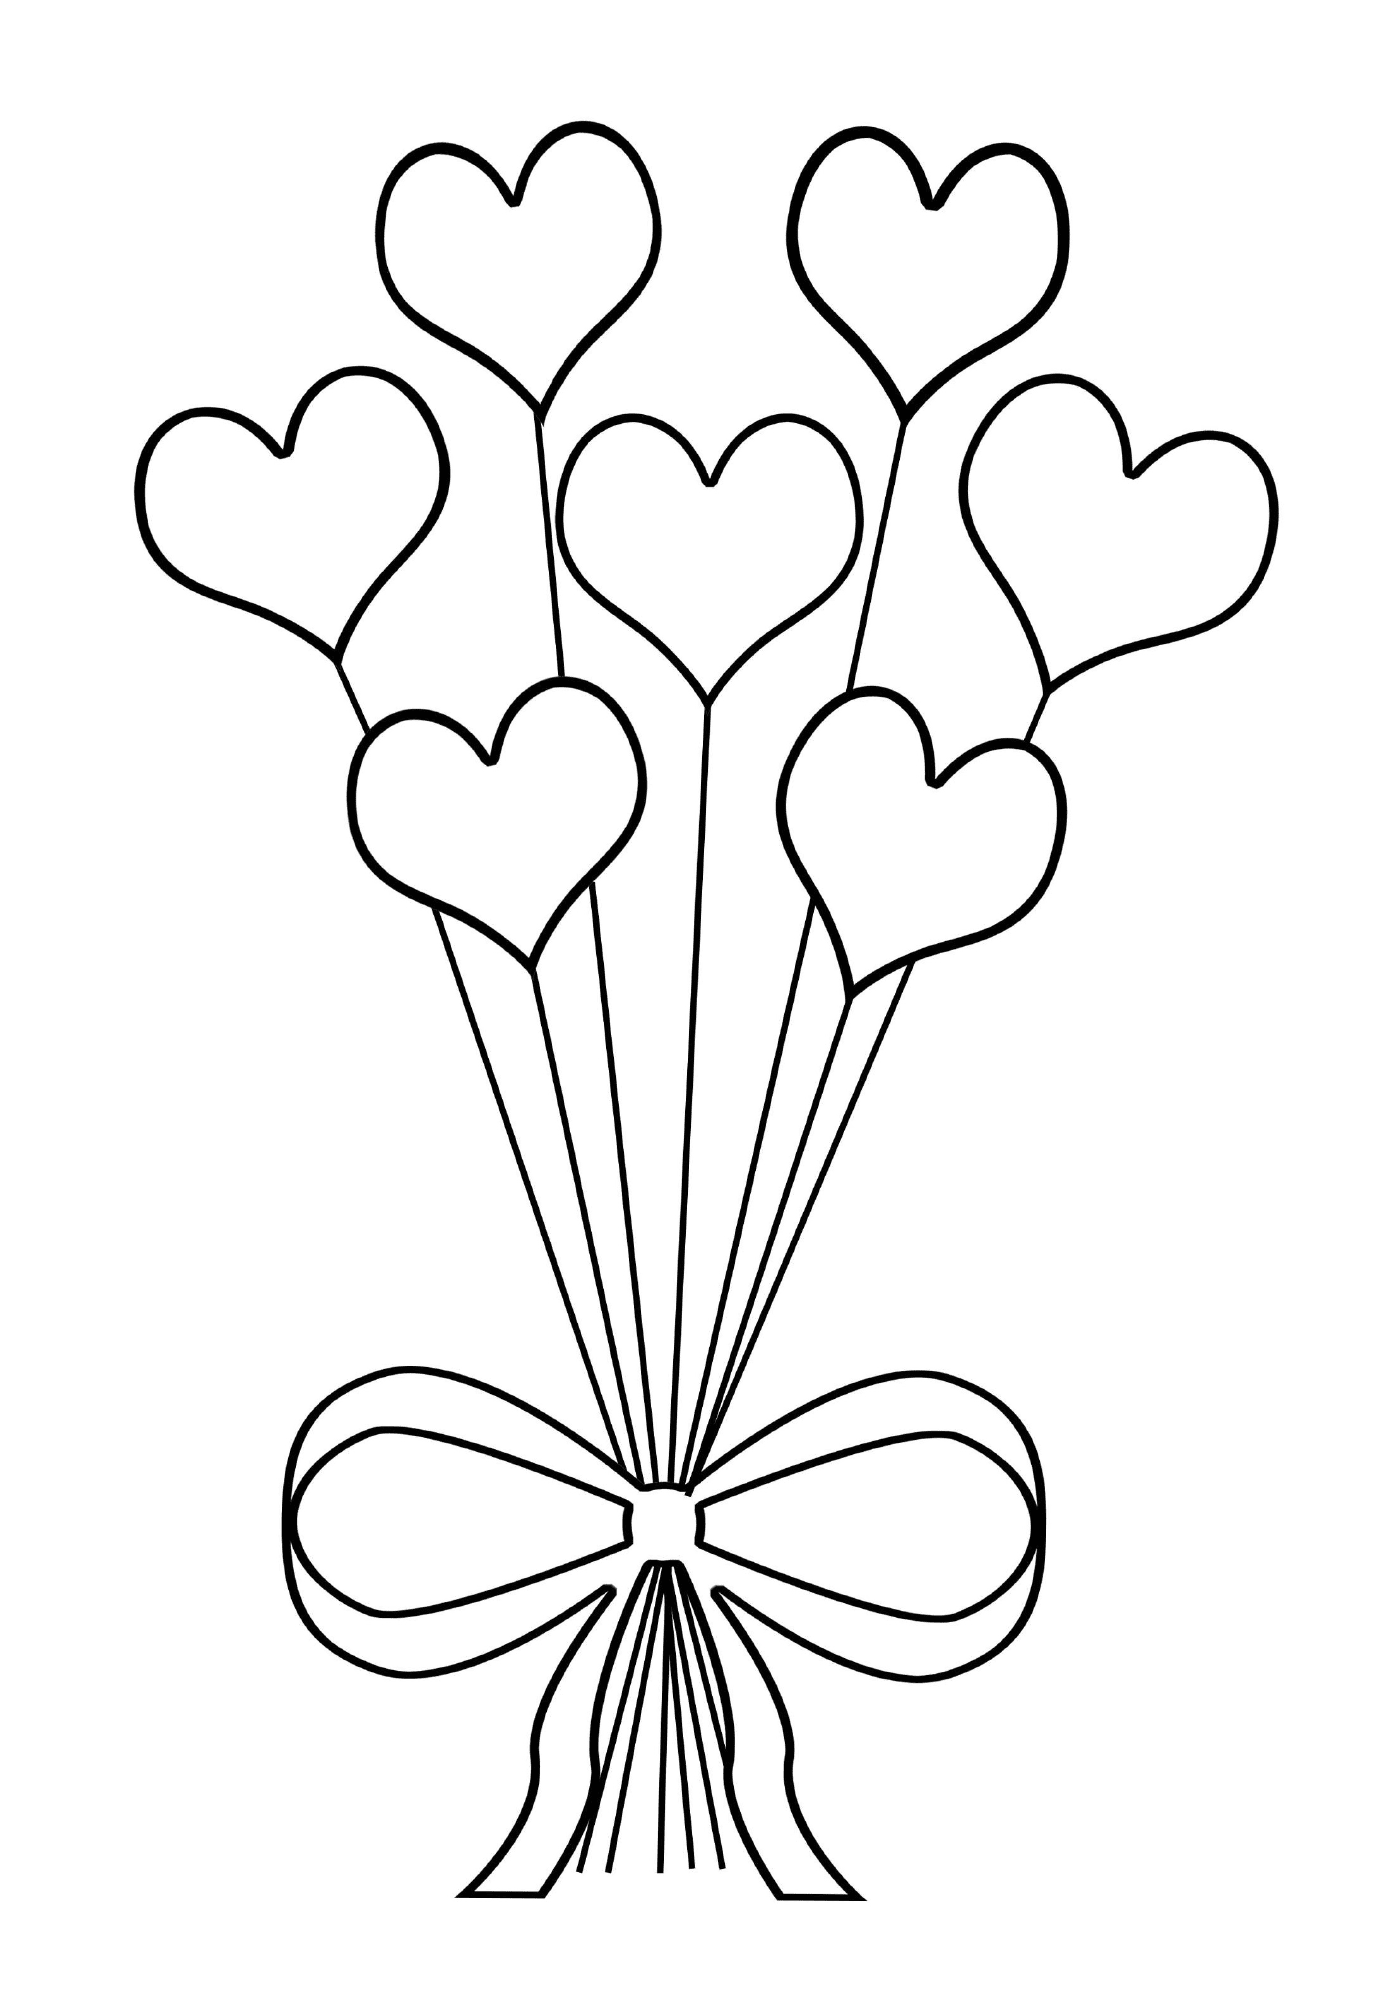  Um buquê original de flores em forma de coração 